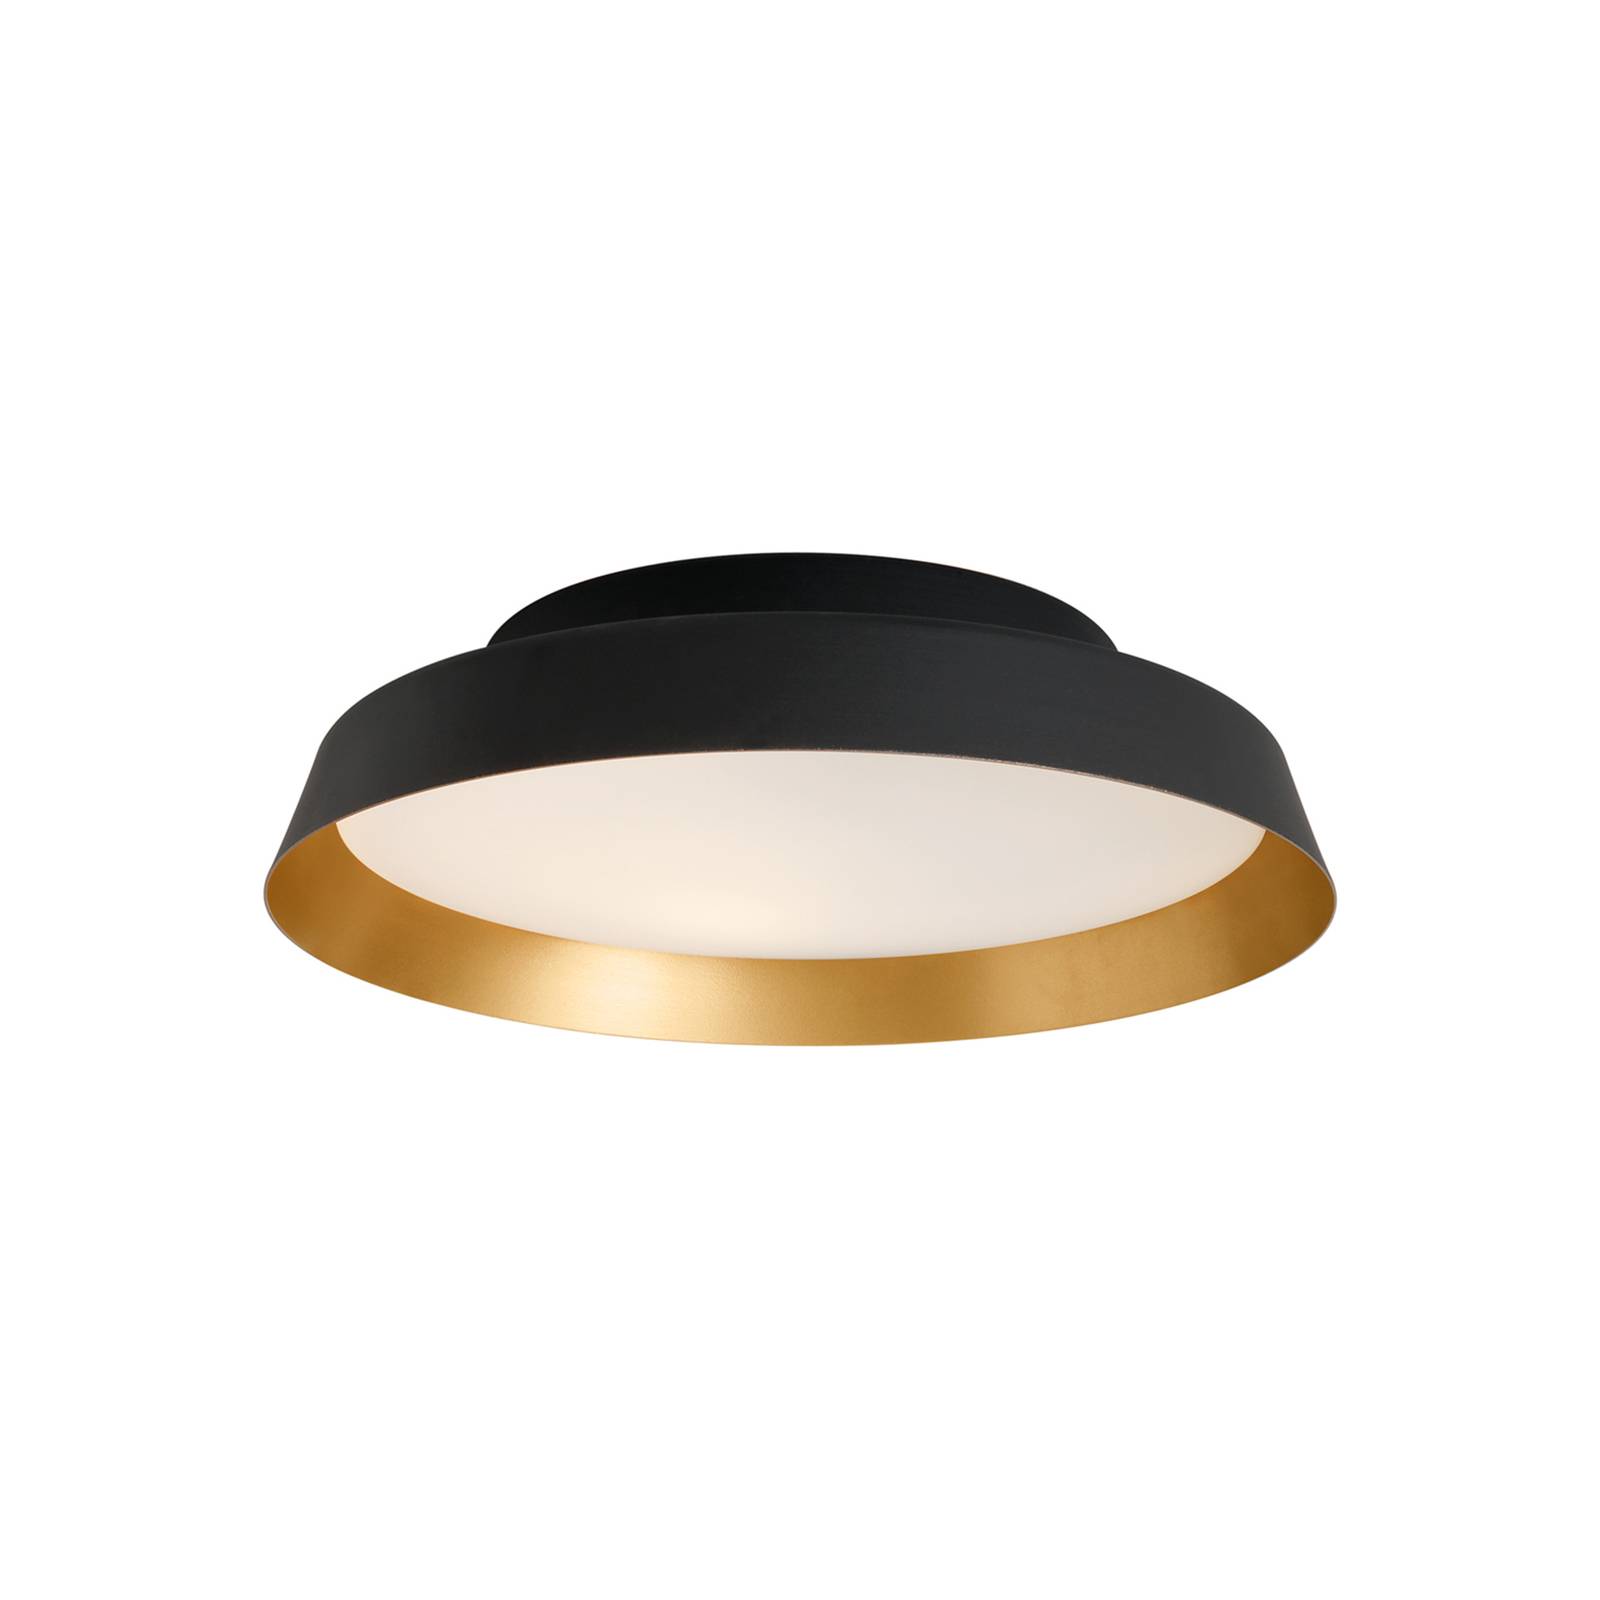 Carpyen LED-Deckenleuchte Boop! Ø54cm schwarz/gold